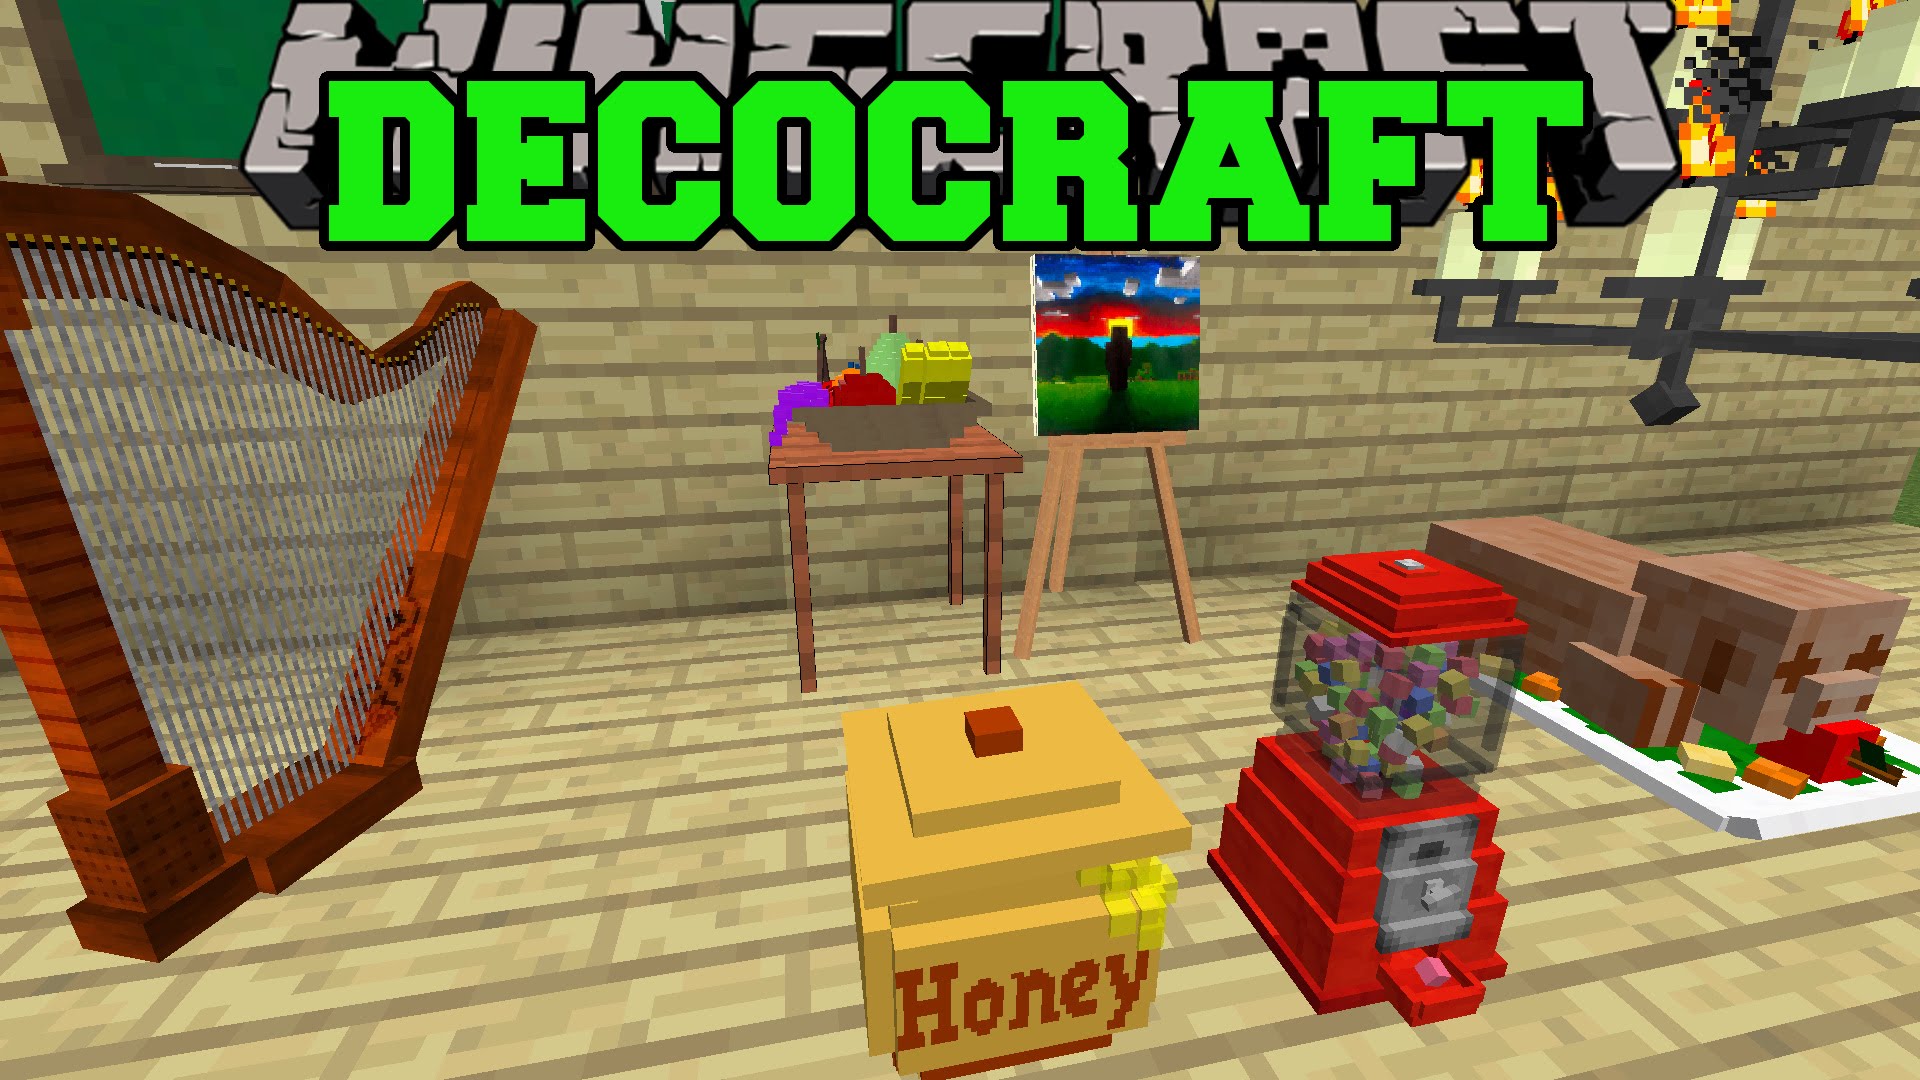 Decocraft Mod for Minecraft 1.12.2/1.11.2 | MinecraftRed
